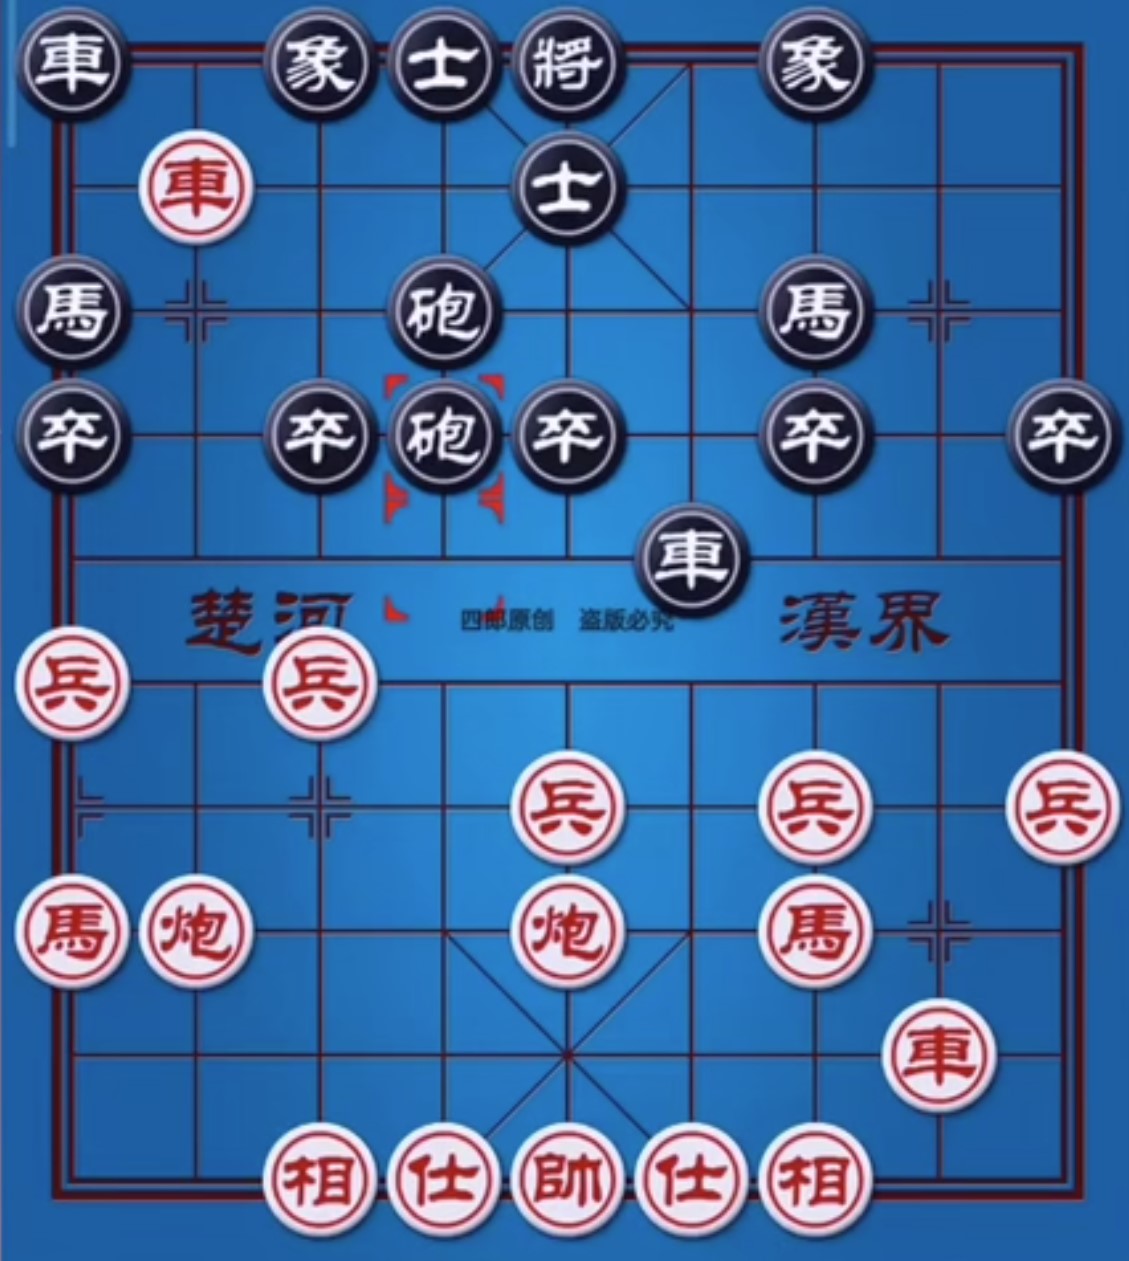 fc大陆象棋中文典藏版